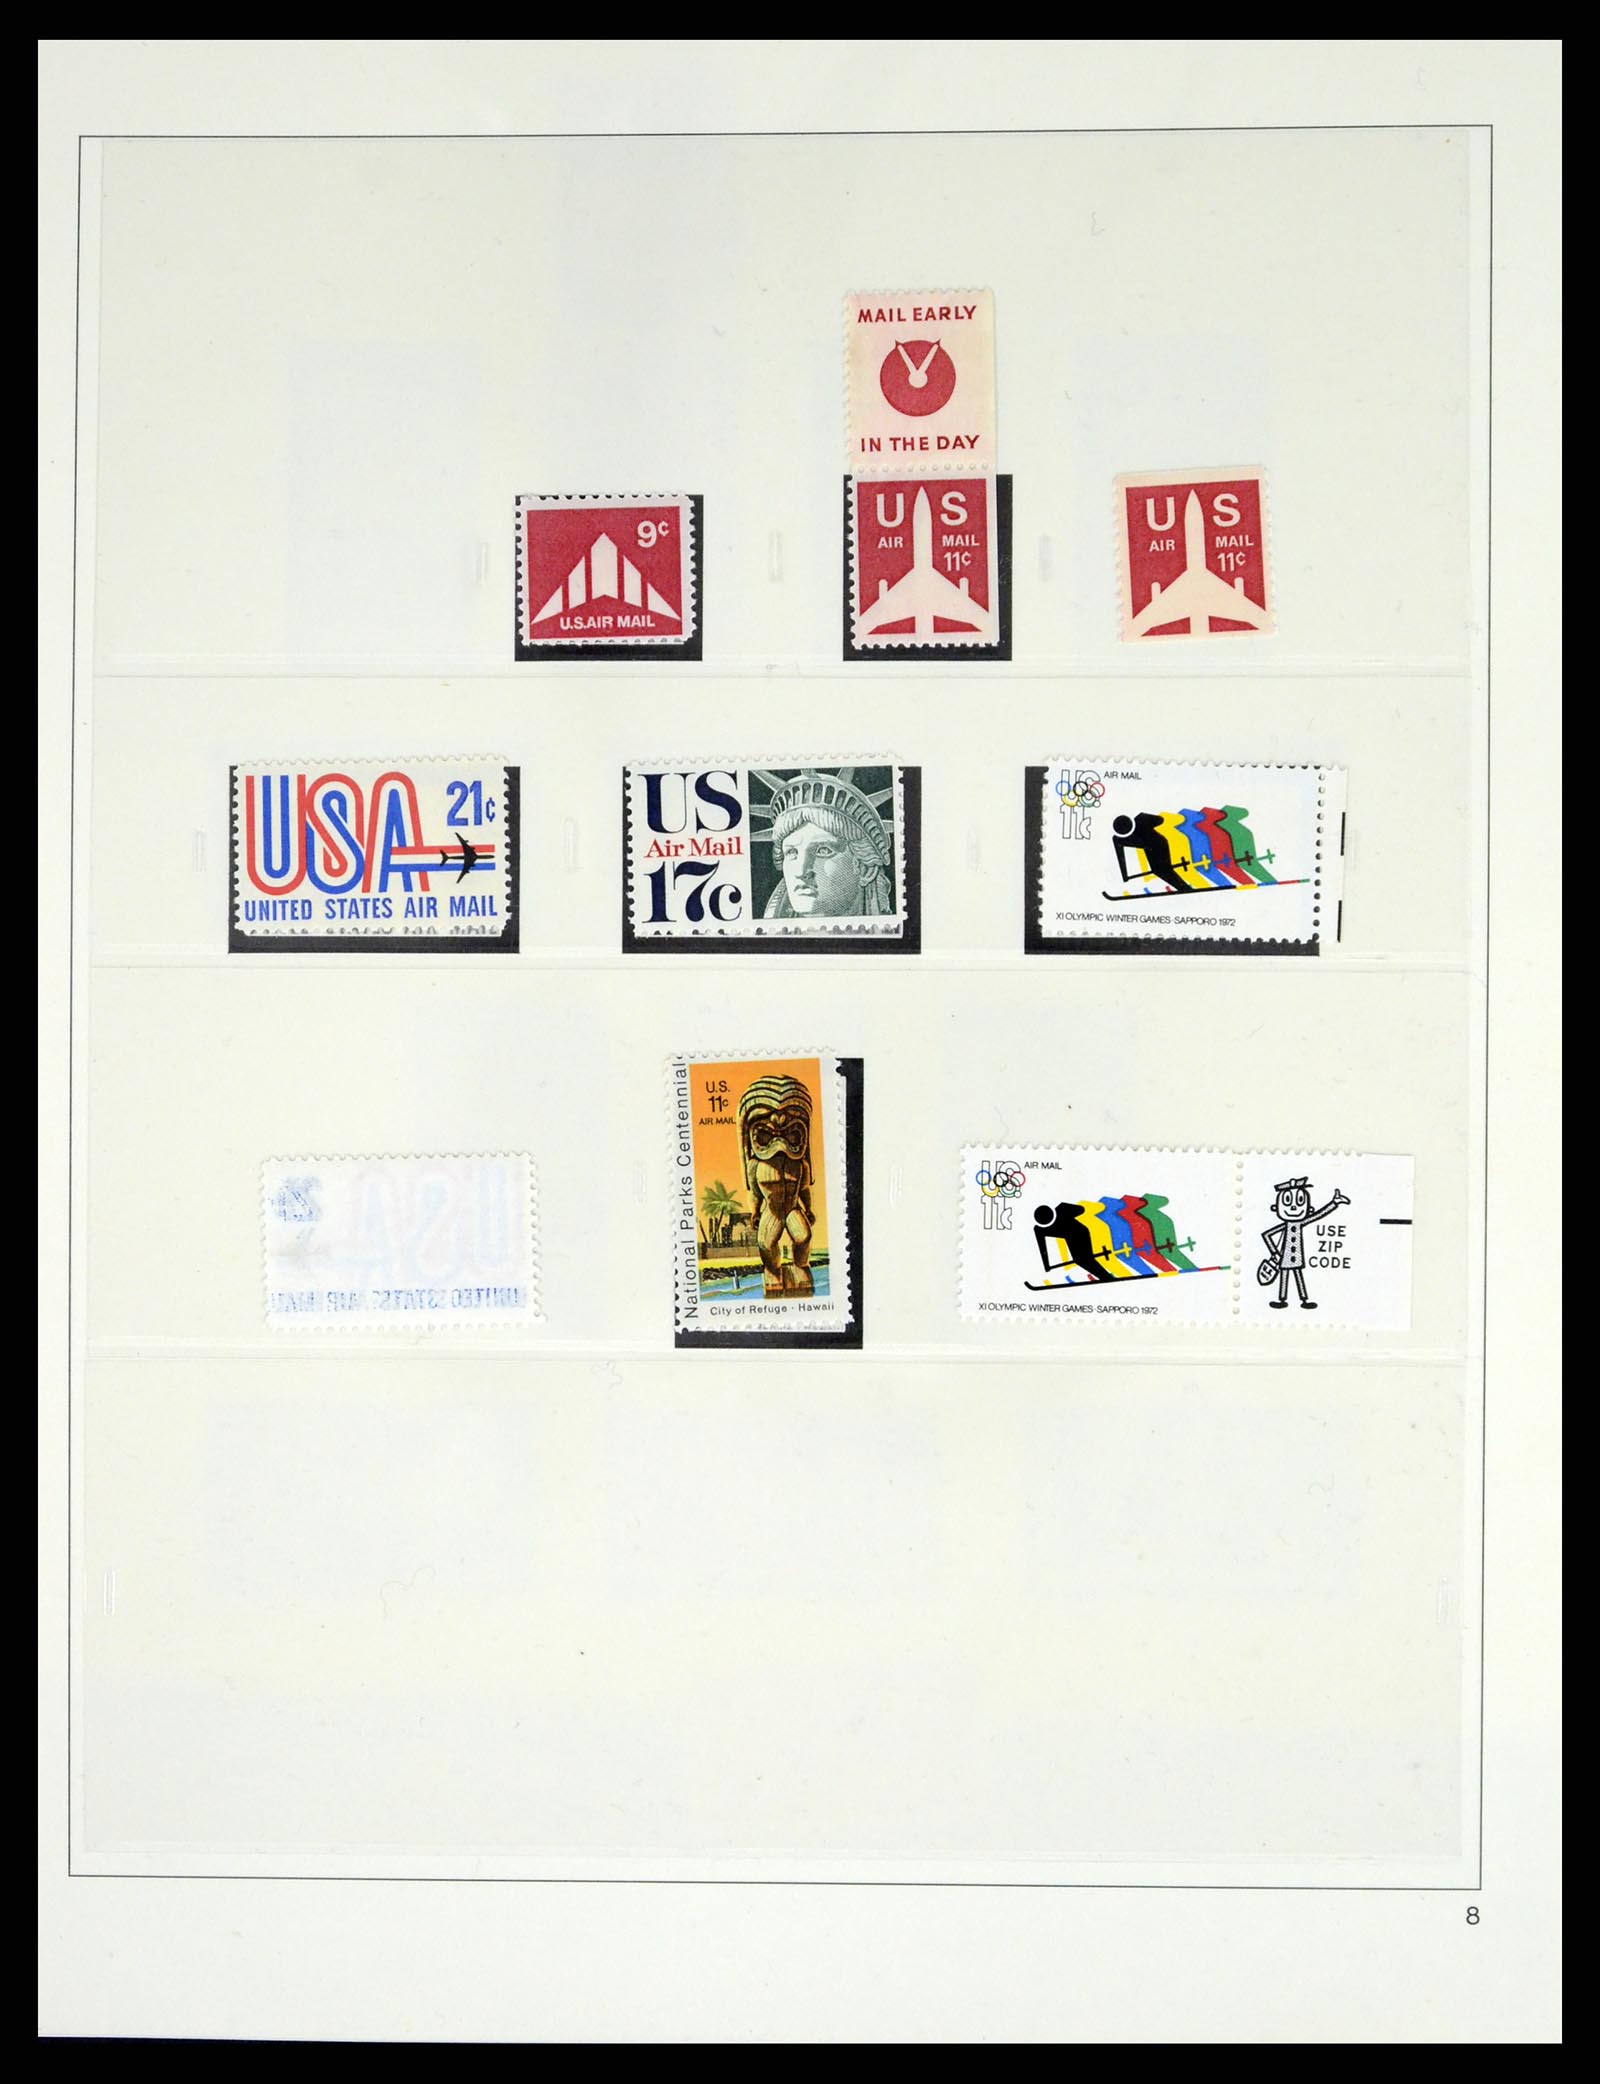 37551 217 - Stamp collection 37551 USA 1851-2001.